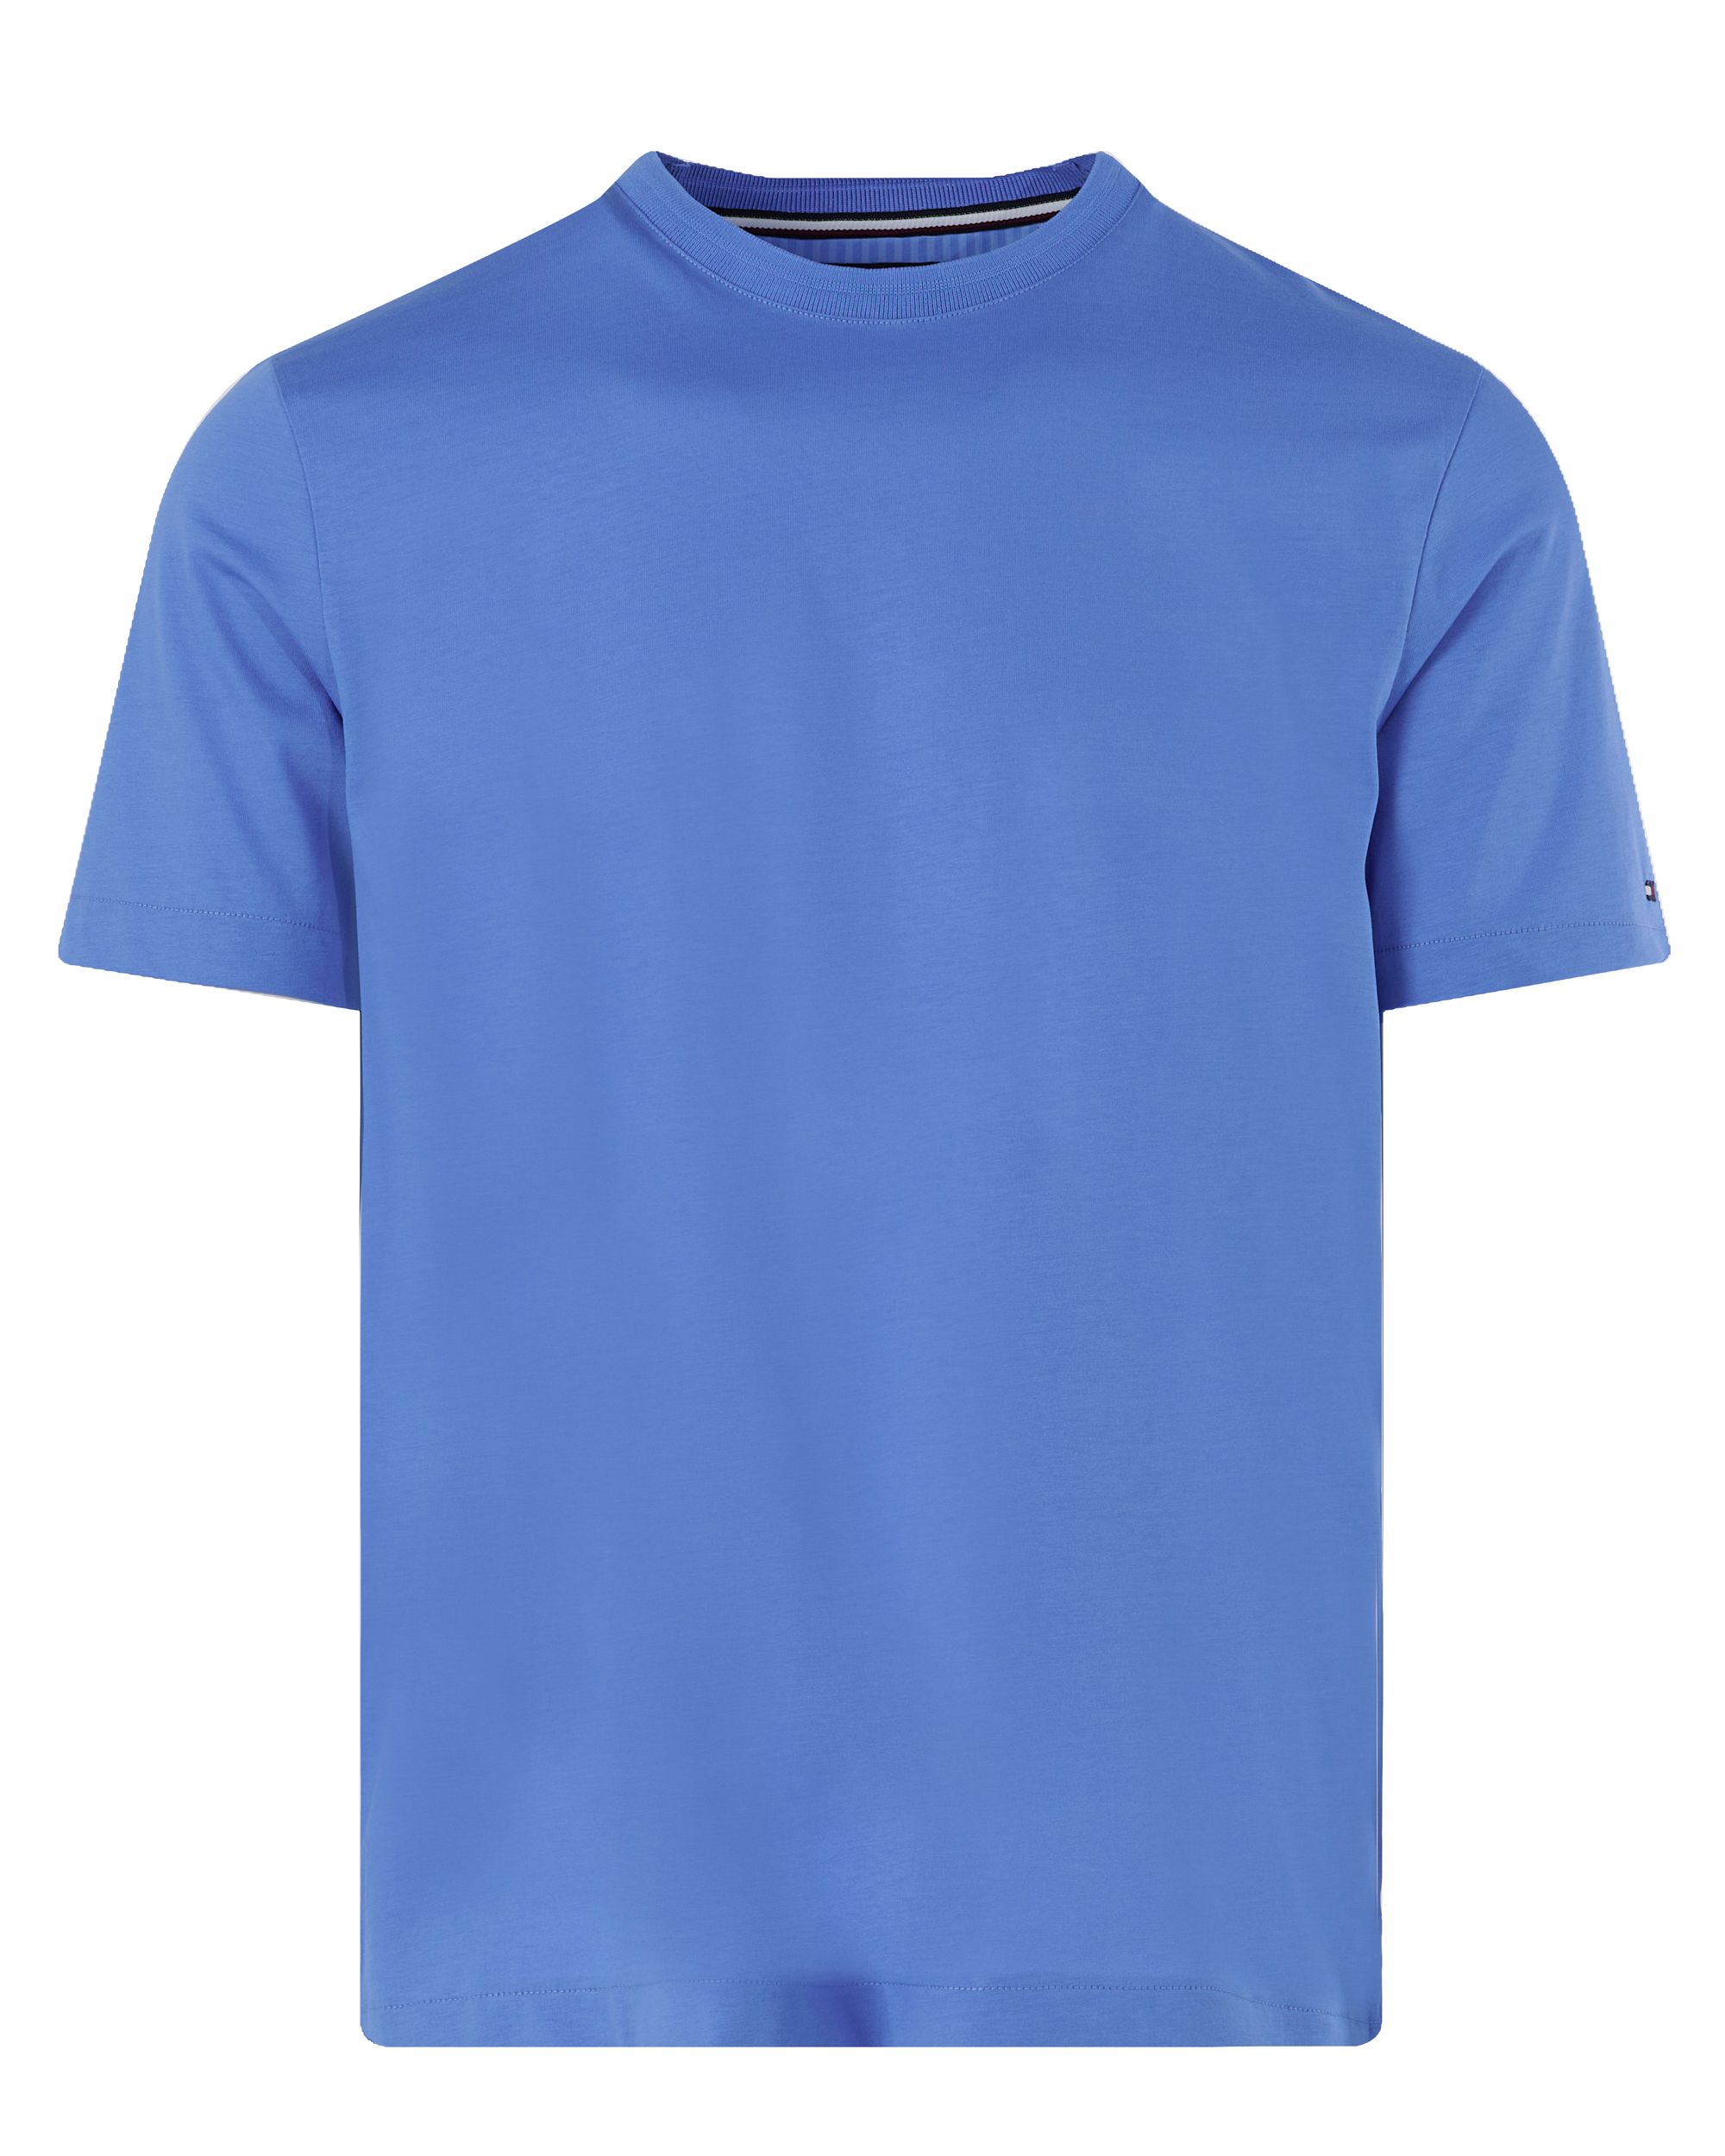 Tommy Hilfiger Menswear T-shirt KM Blauw 094639-001-L